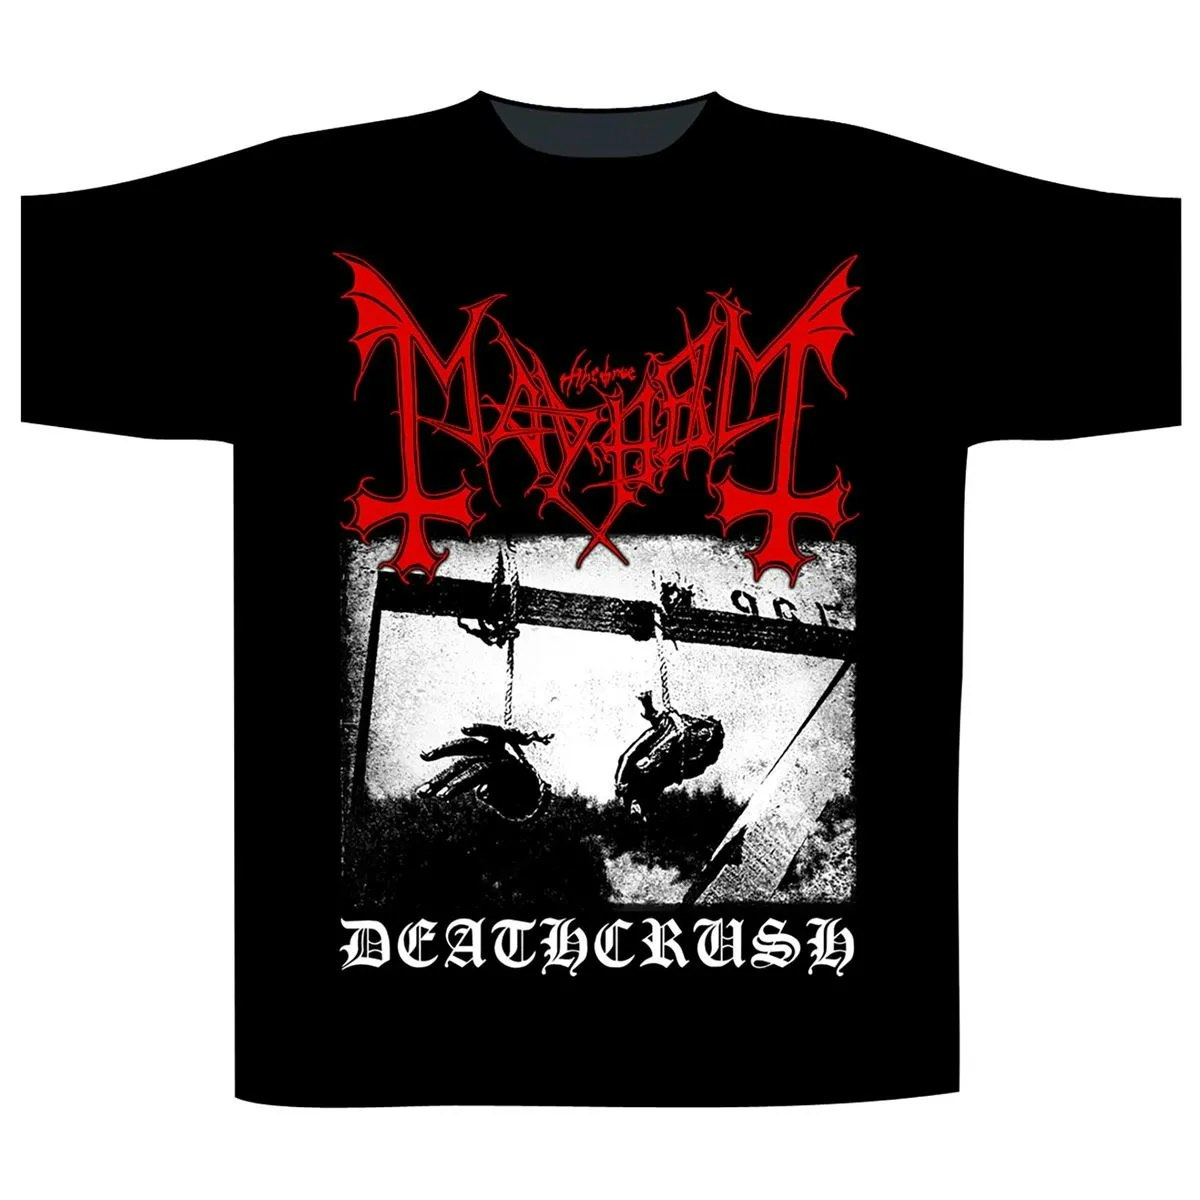 MAYHEM - DEATHCRUSH T-Shirt